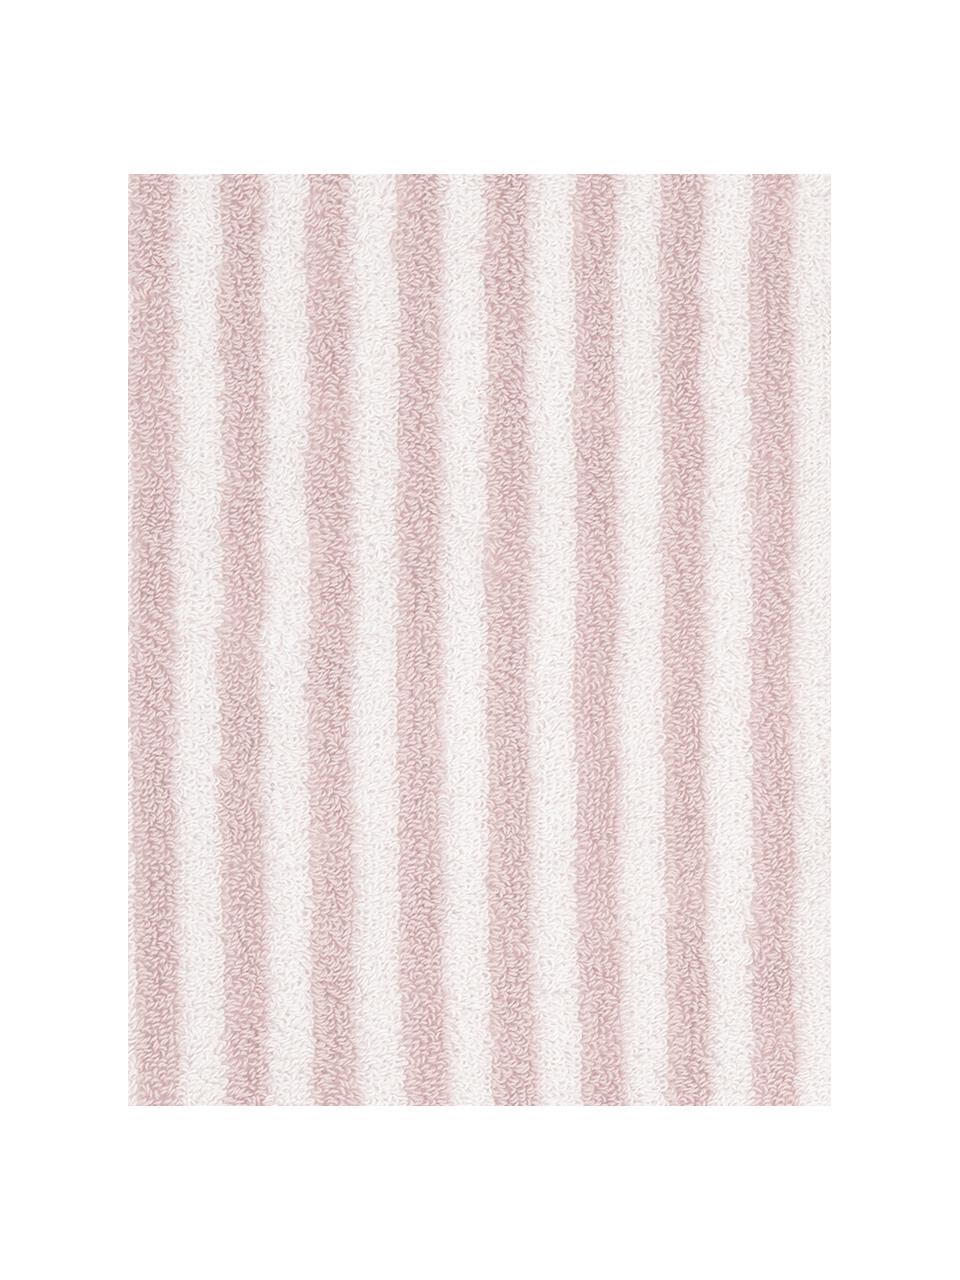 Asciugamano a righe Viola 2pz, Rosa, bianco, Asciugamano, Larg. 50 x Lung. 100 cm, 2 pz